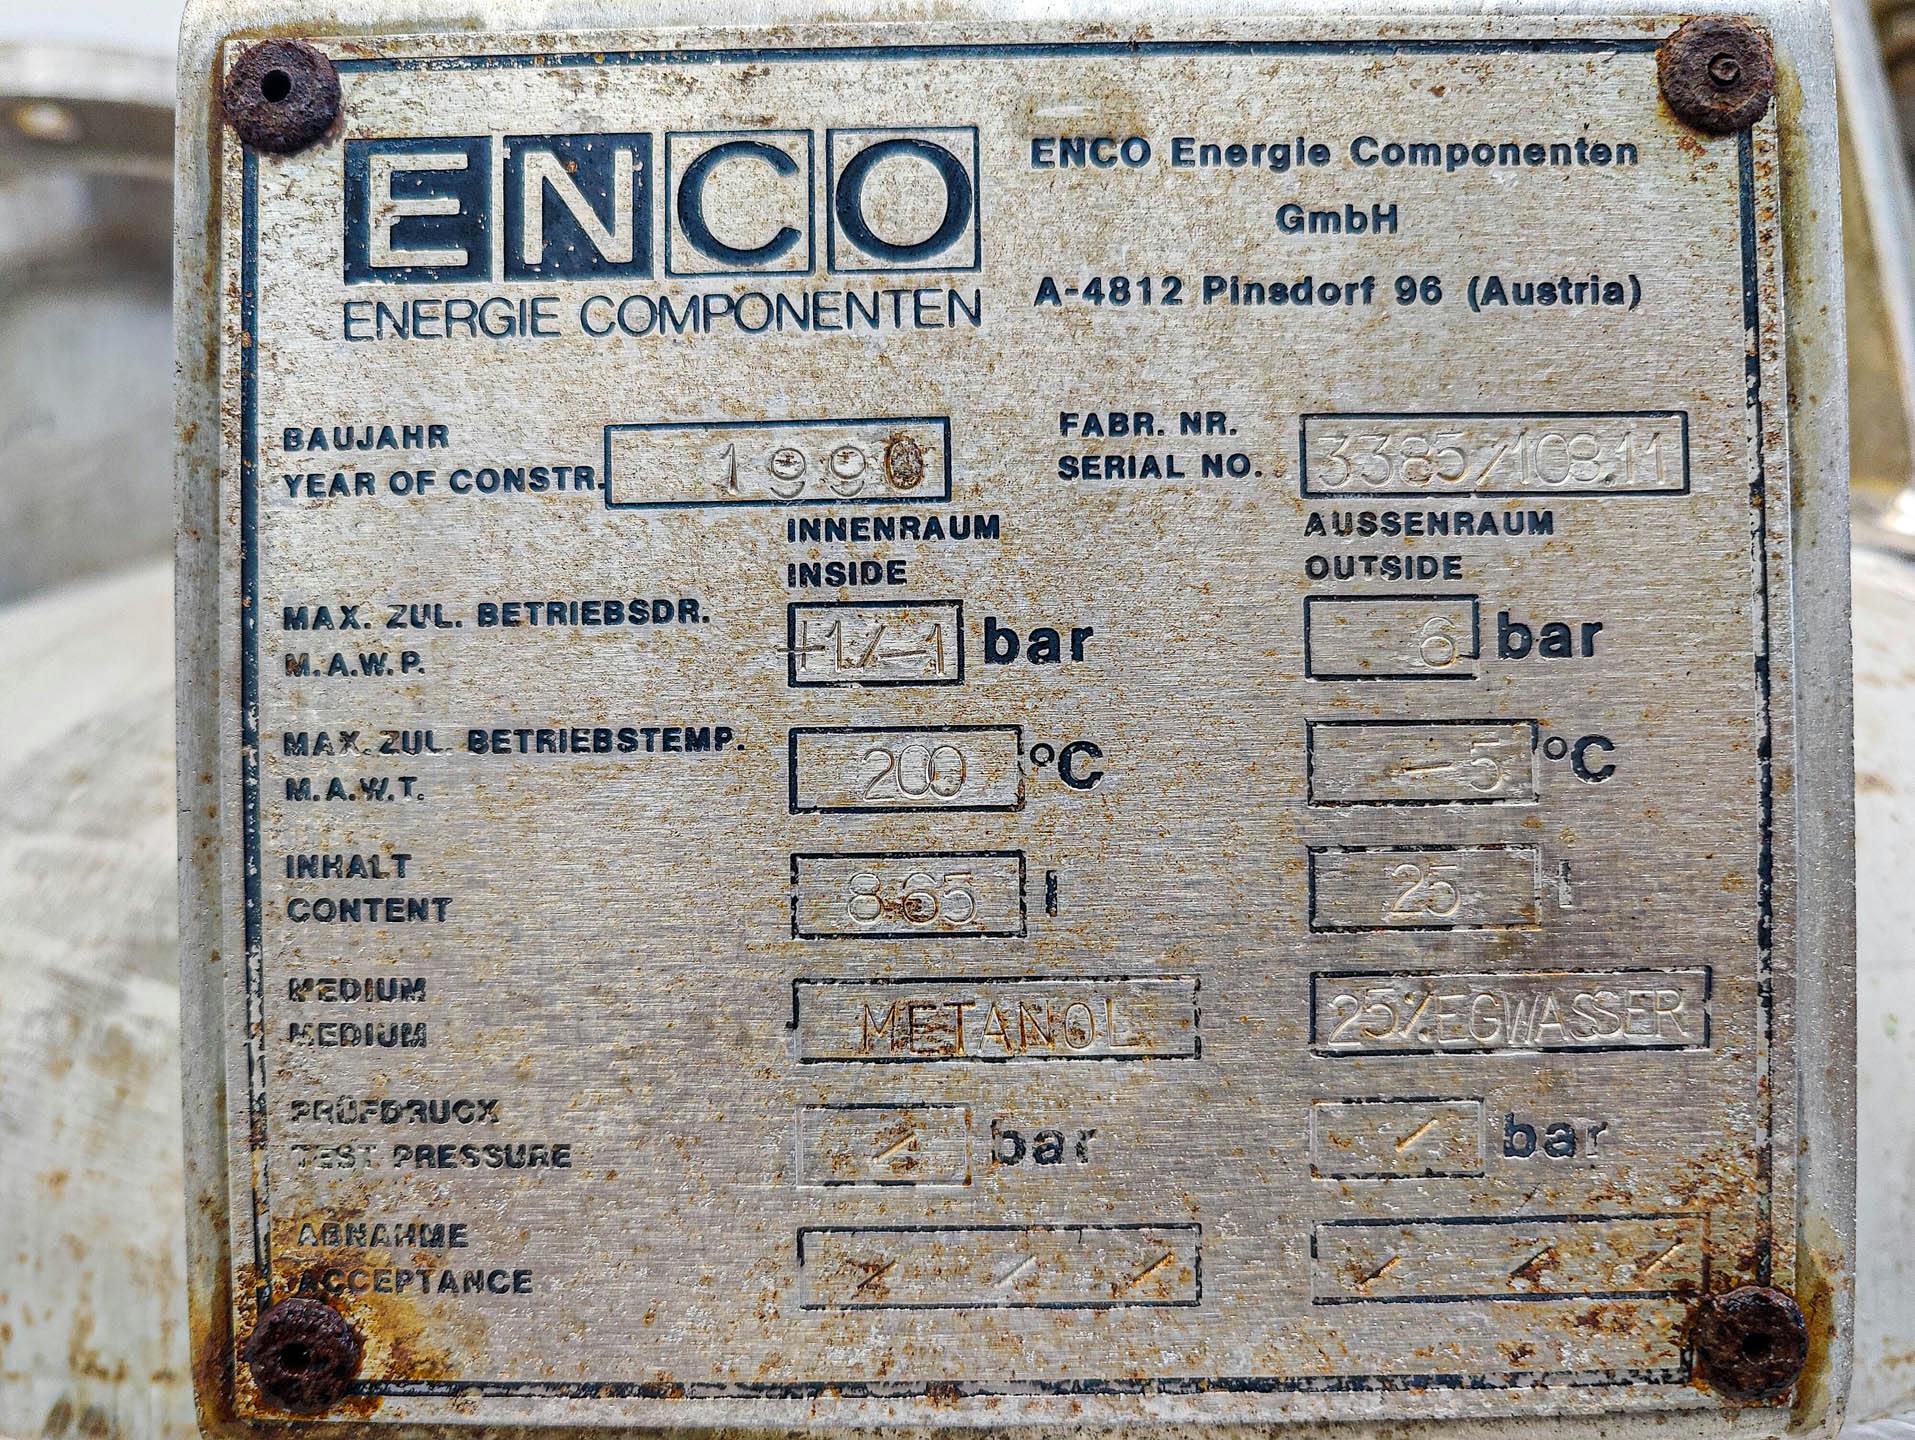 Enco 865 Ltr. - Pressure vessel - image 8